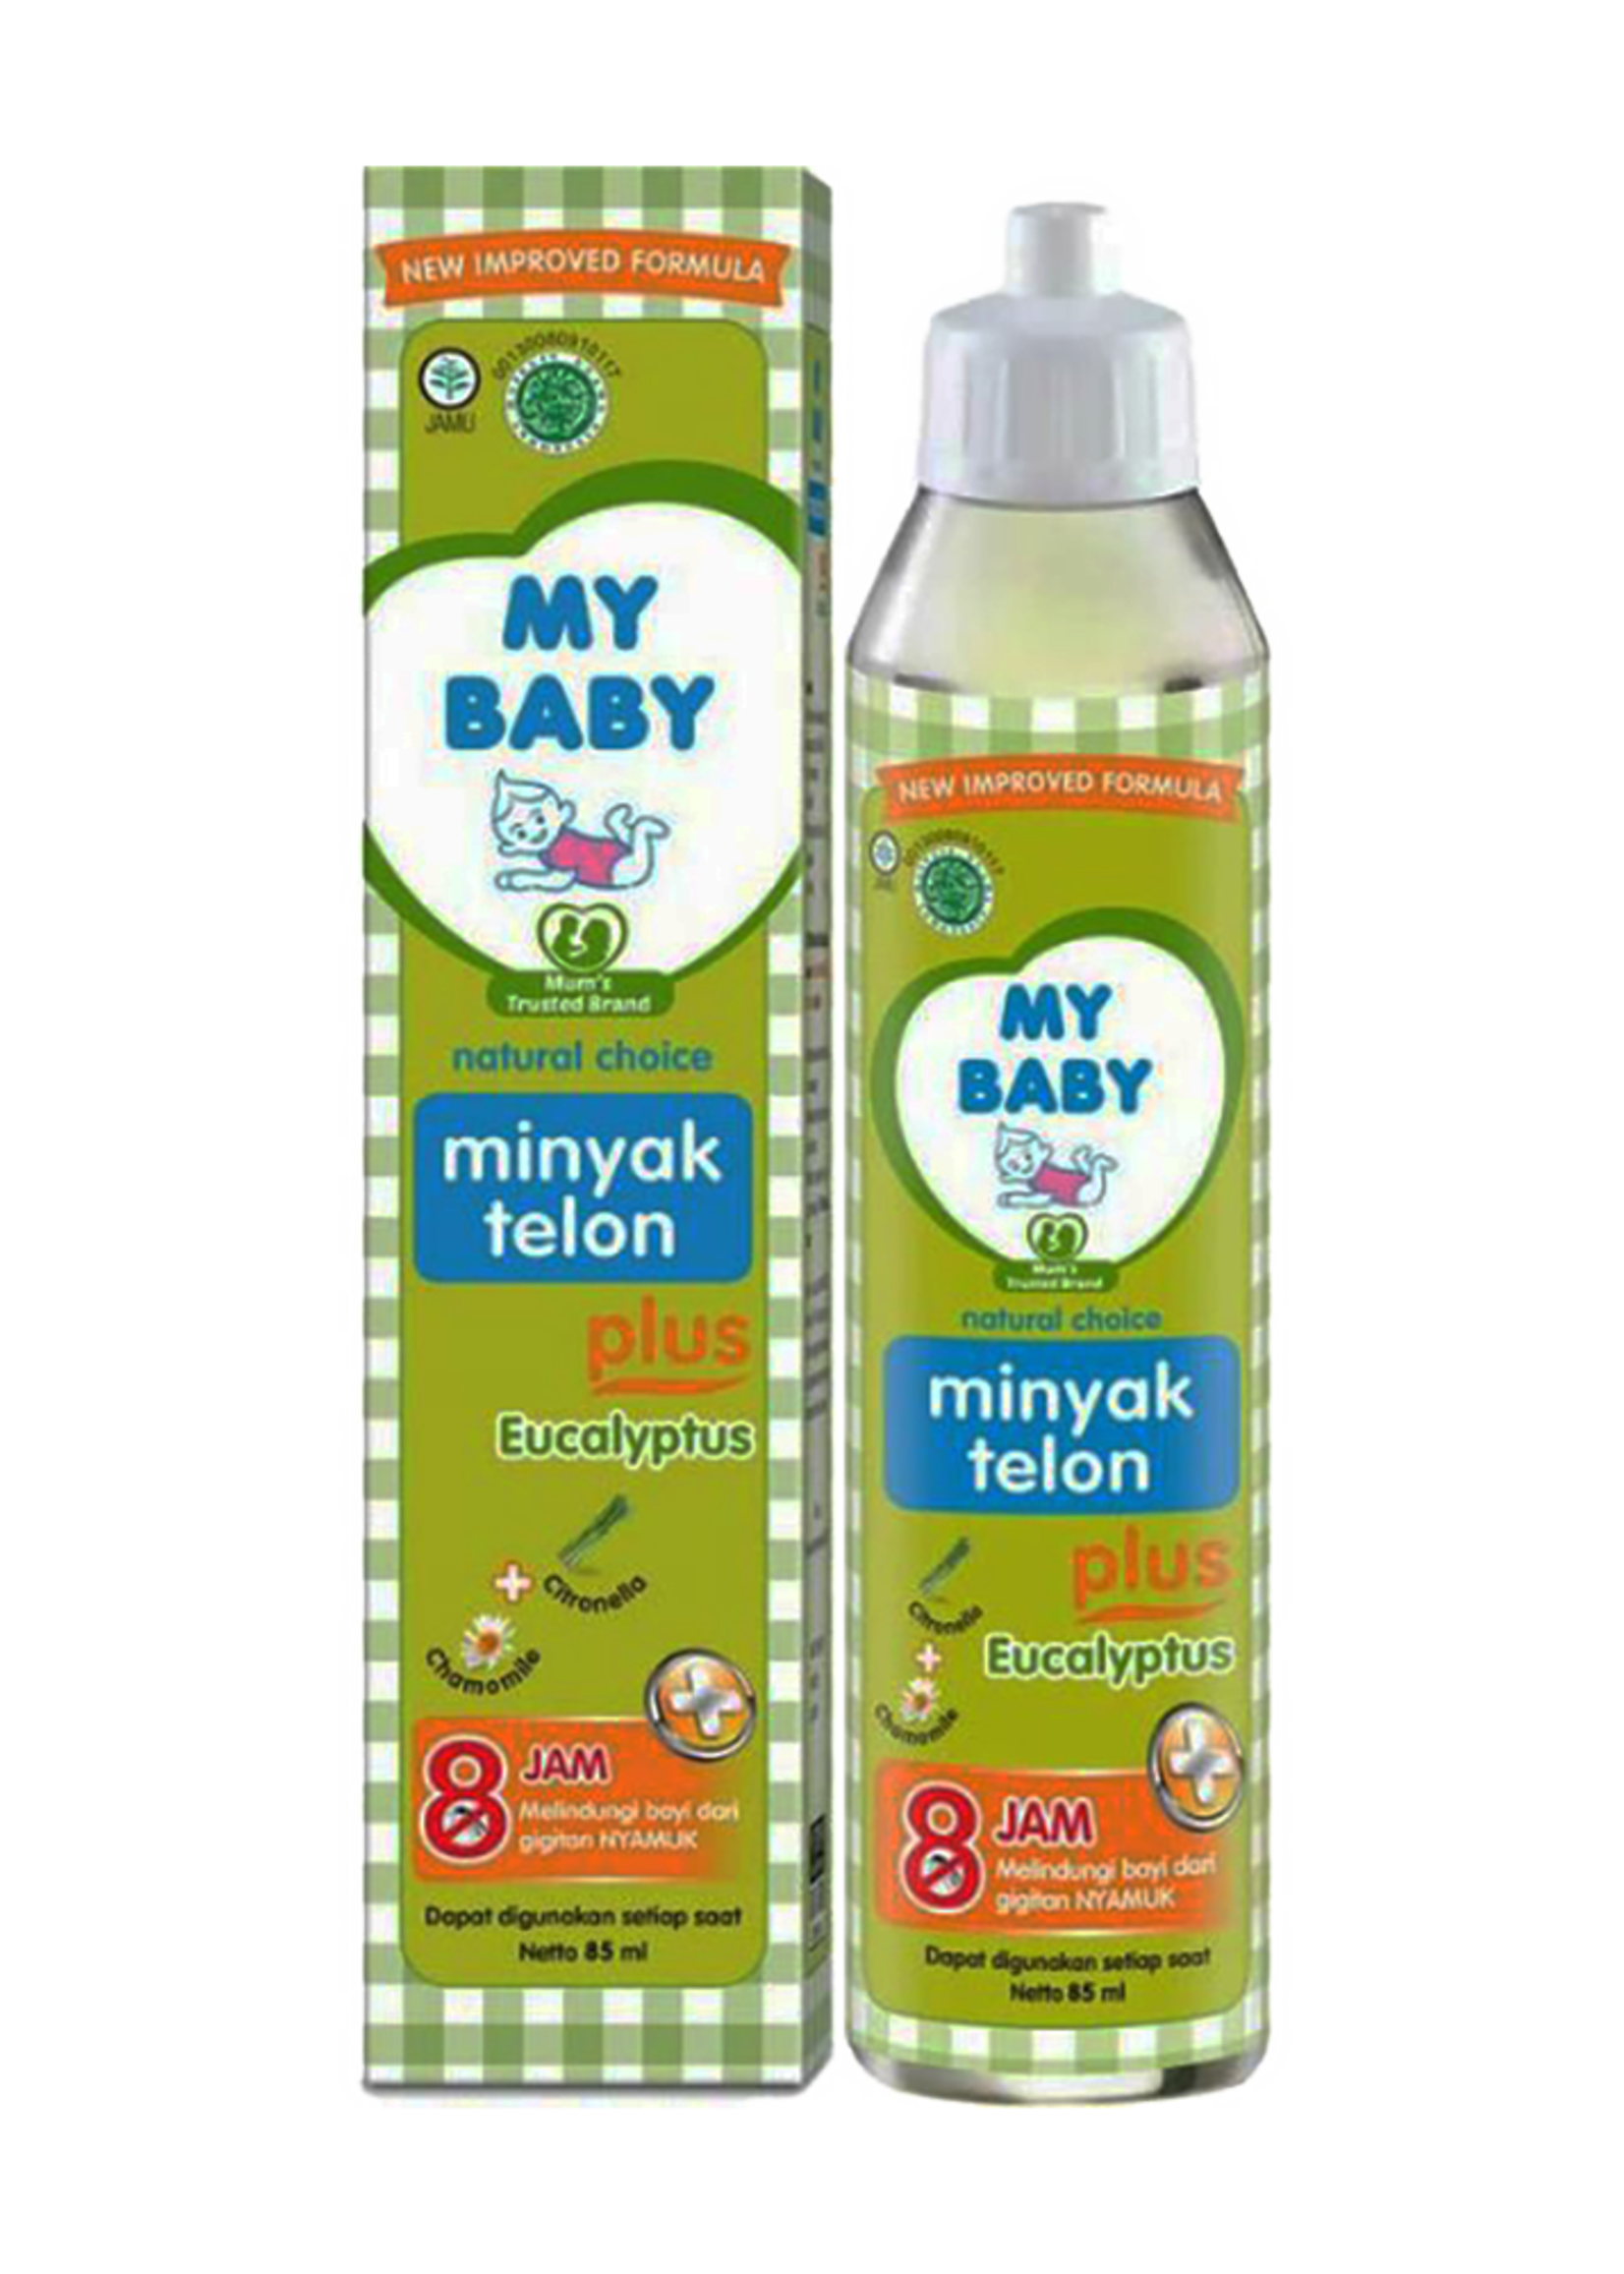 My Baby My Baby - Minyak Telon